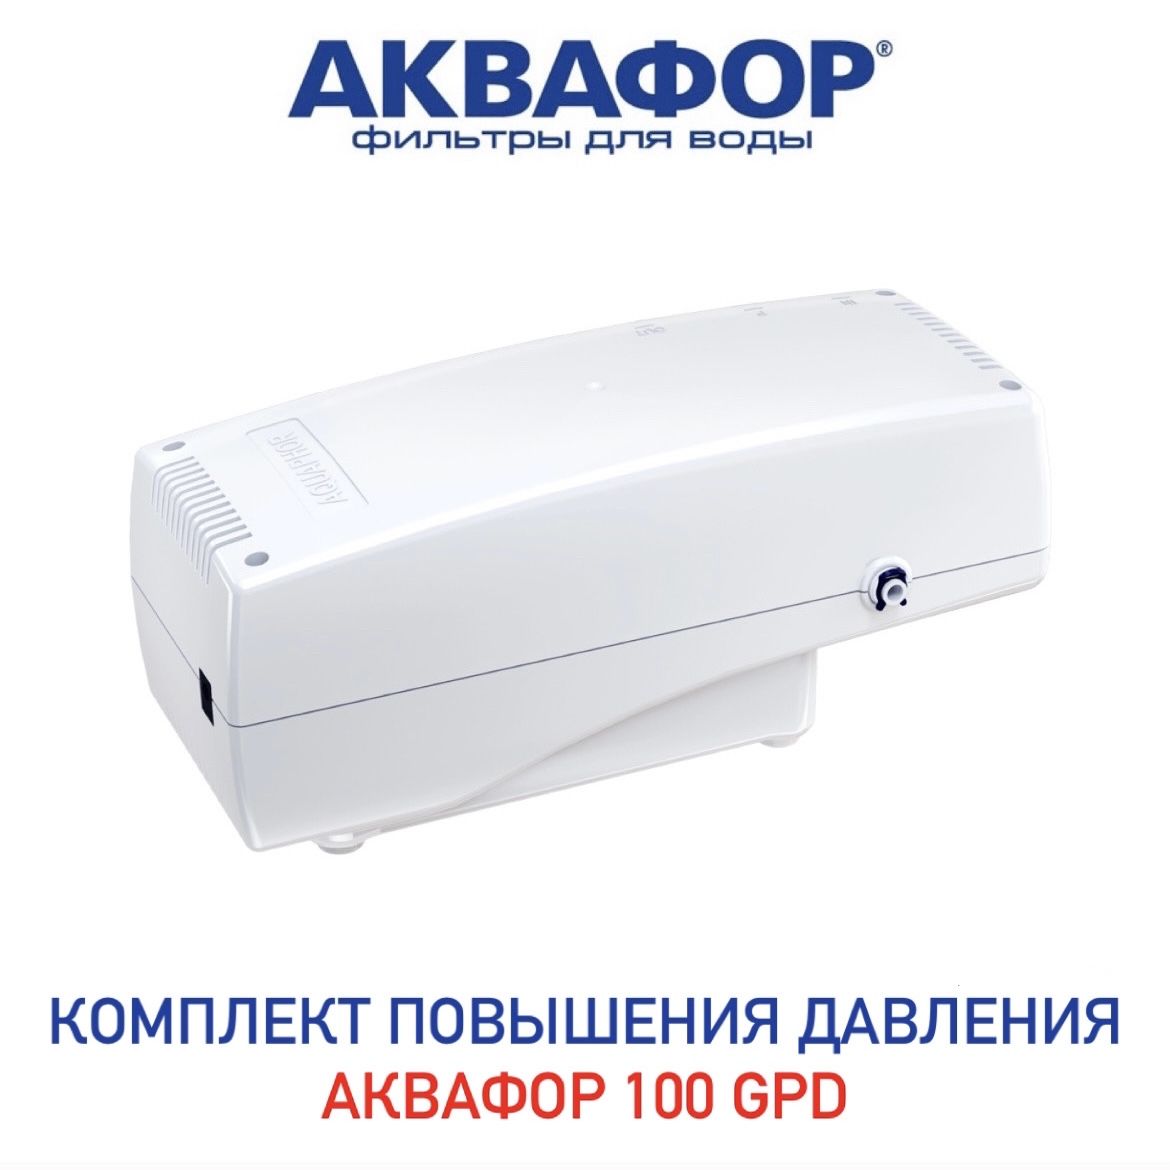 Аквафор для повышения давления (100 GPD) (501737). Аквафор для повышения давления (100 GPD) (501737) инструкция.